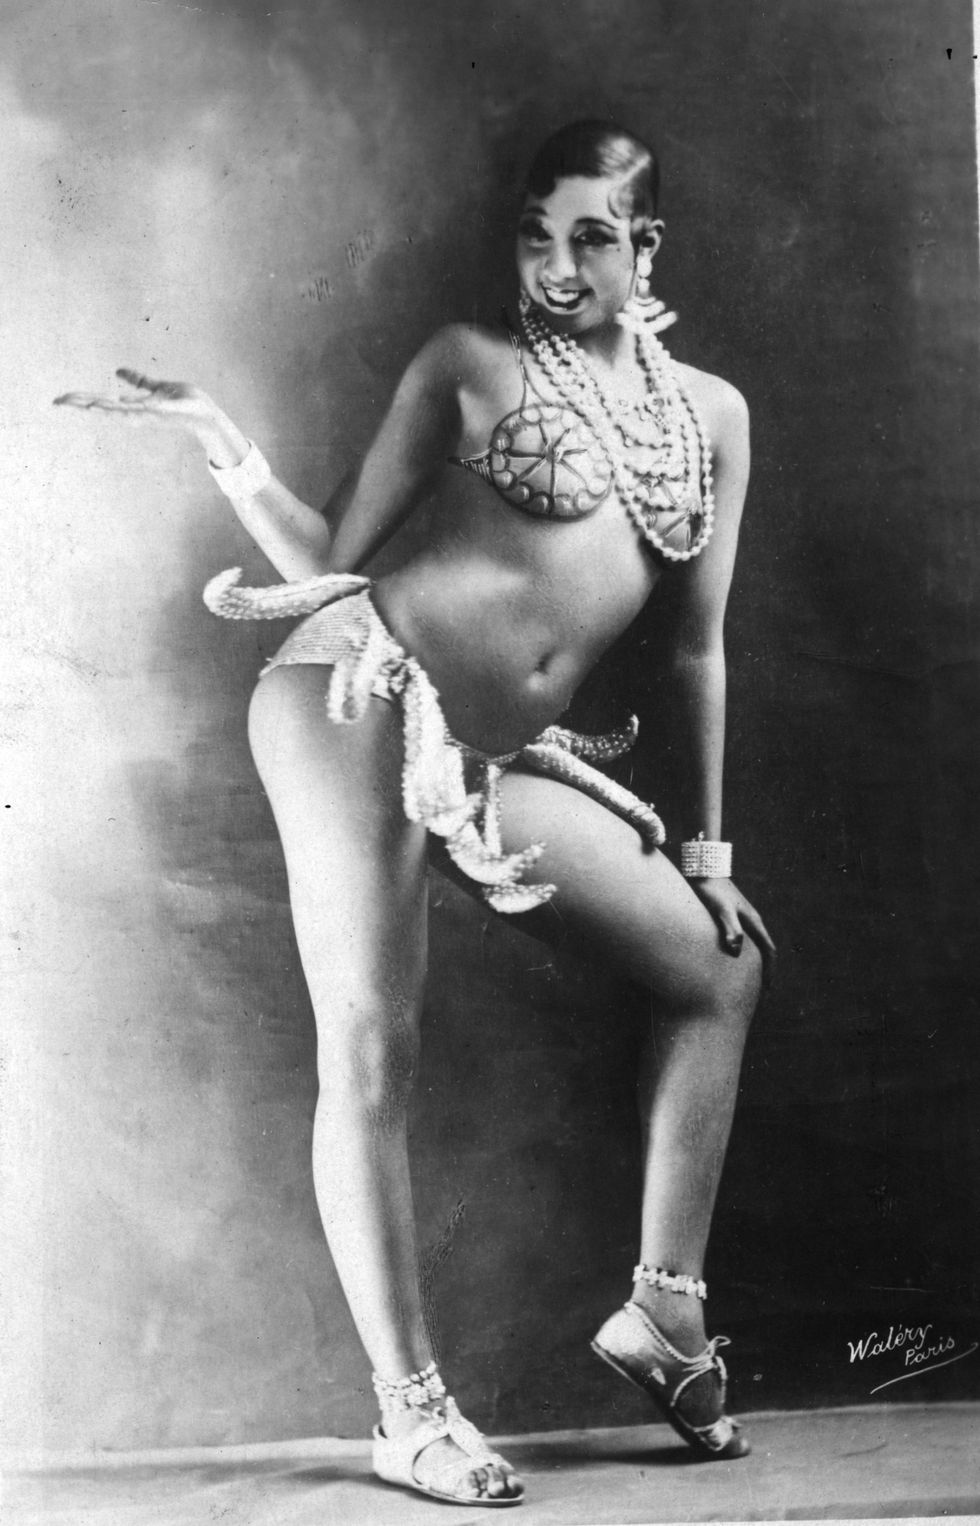 <p>De danseres en mensenrechtenactivist Josephine Baker werd begin jaren 20 in Parijs bekend door haar inmiddels iconische dansroutines. De bekendste is toch wel <em><a href="https://www.youtube.com/watch?v=wmw5eGh888Y">danse sauvage</a></em>, waarvoor ze een rok gemaakt van bananen droeg en haar beste twerkmoves liet zien. Schijnbaar was het schouwspel zo revolutionair dat het publiek niet wist wat ze met hun gevoelens van aantrekkingskracht, fascinatie en afkeer aanmoesten. '<em>This ridiculously vulgar... wiggling</em>,' zei antropoloog Essie Robeson ooit en Ernest Hemingway blikt terug op Josephine Baker als '<em>the most sensational woman anybody ever saw. Or ever will.</em>'</p><p><span class="redactor-invisible-space" style="line-height: 1.6em; background-color: initial;"></span></p>